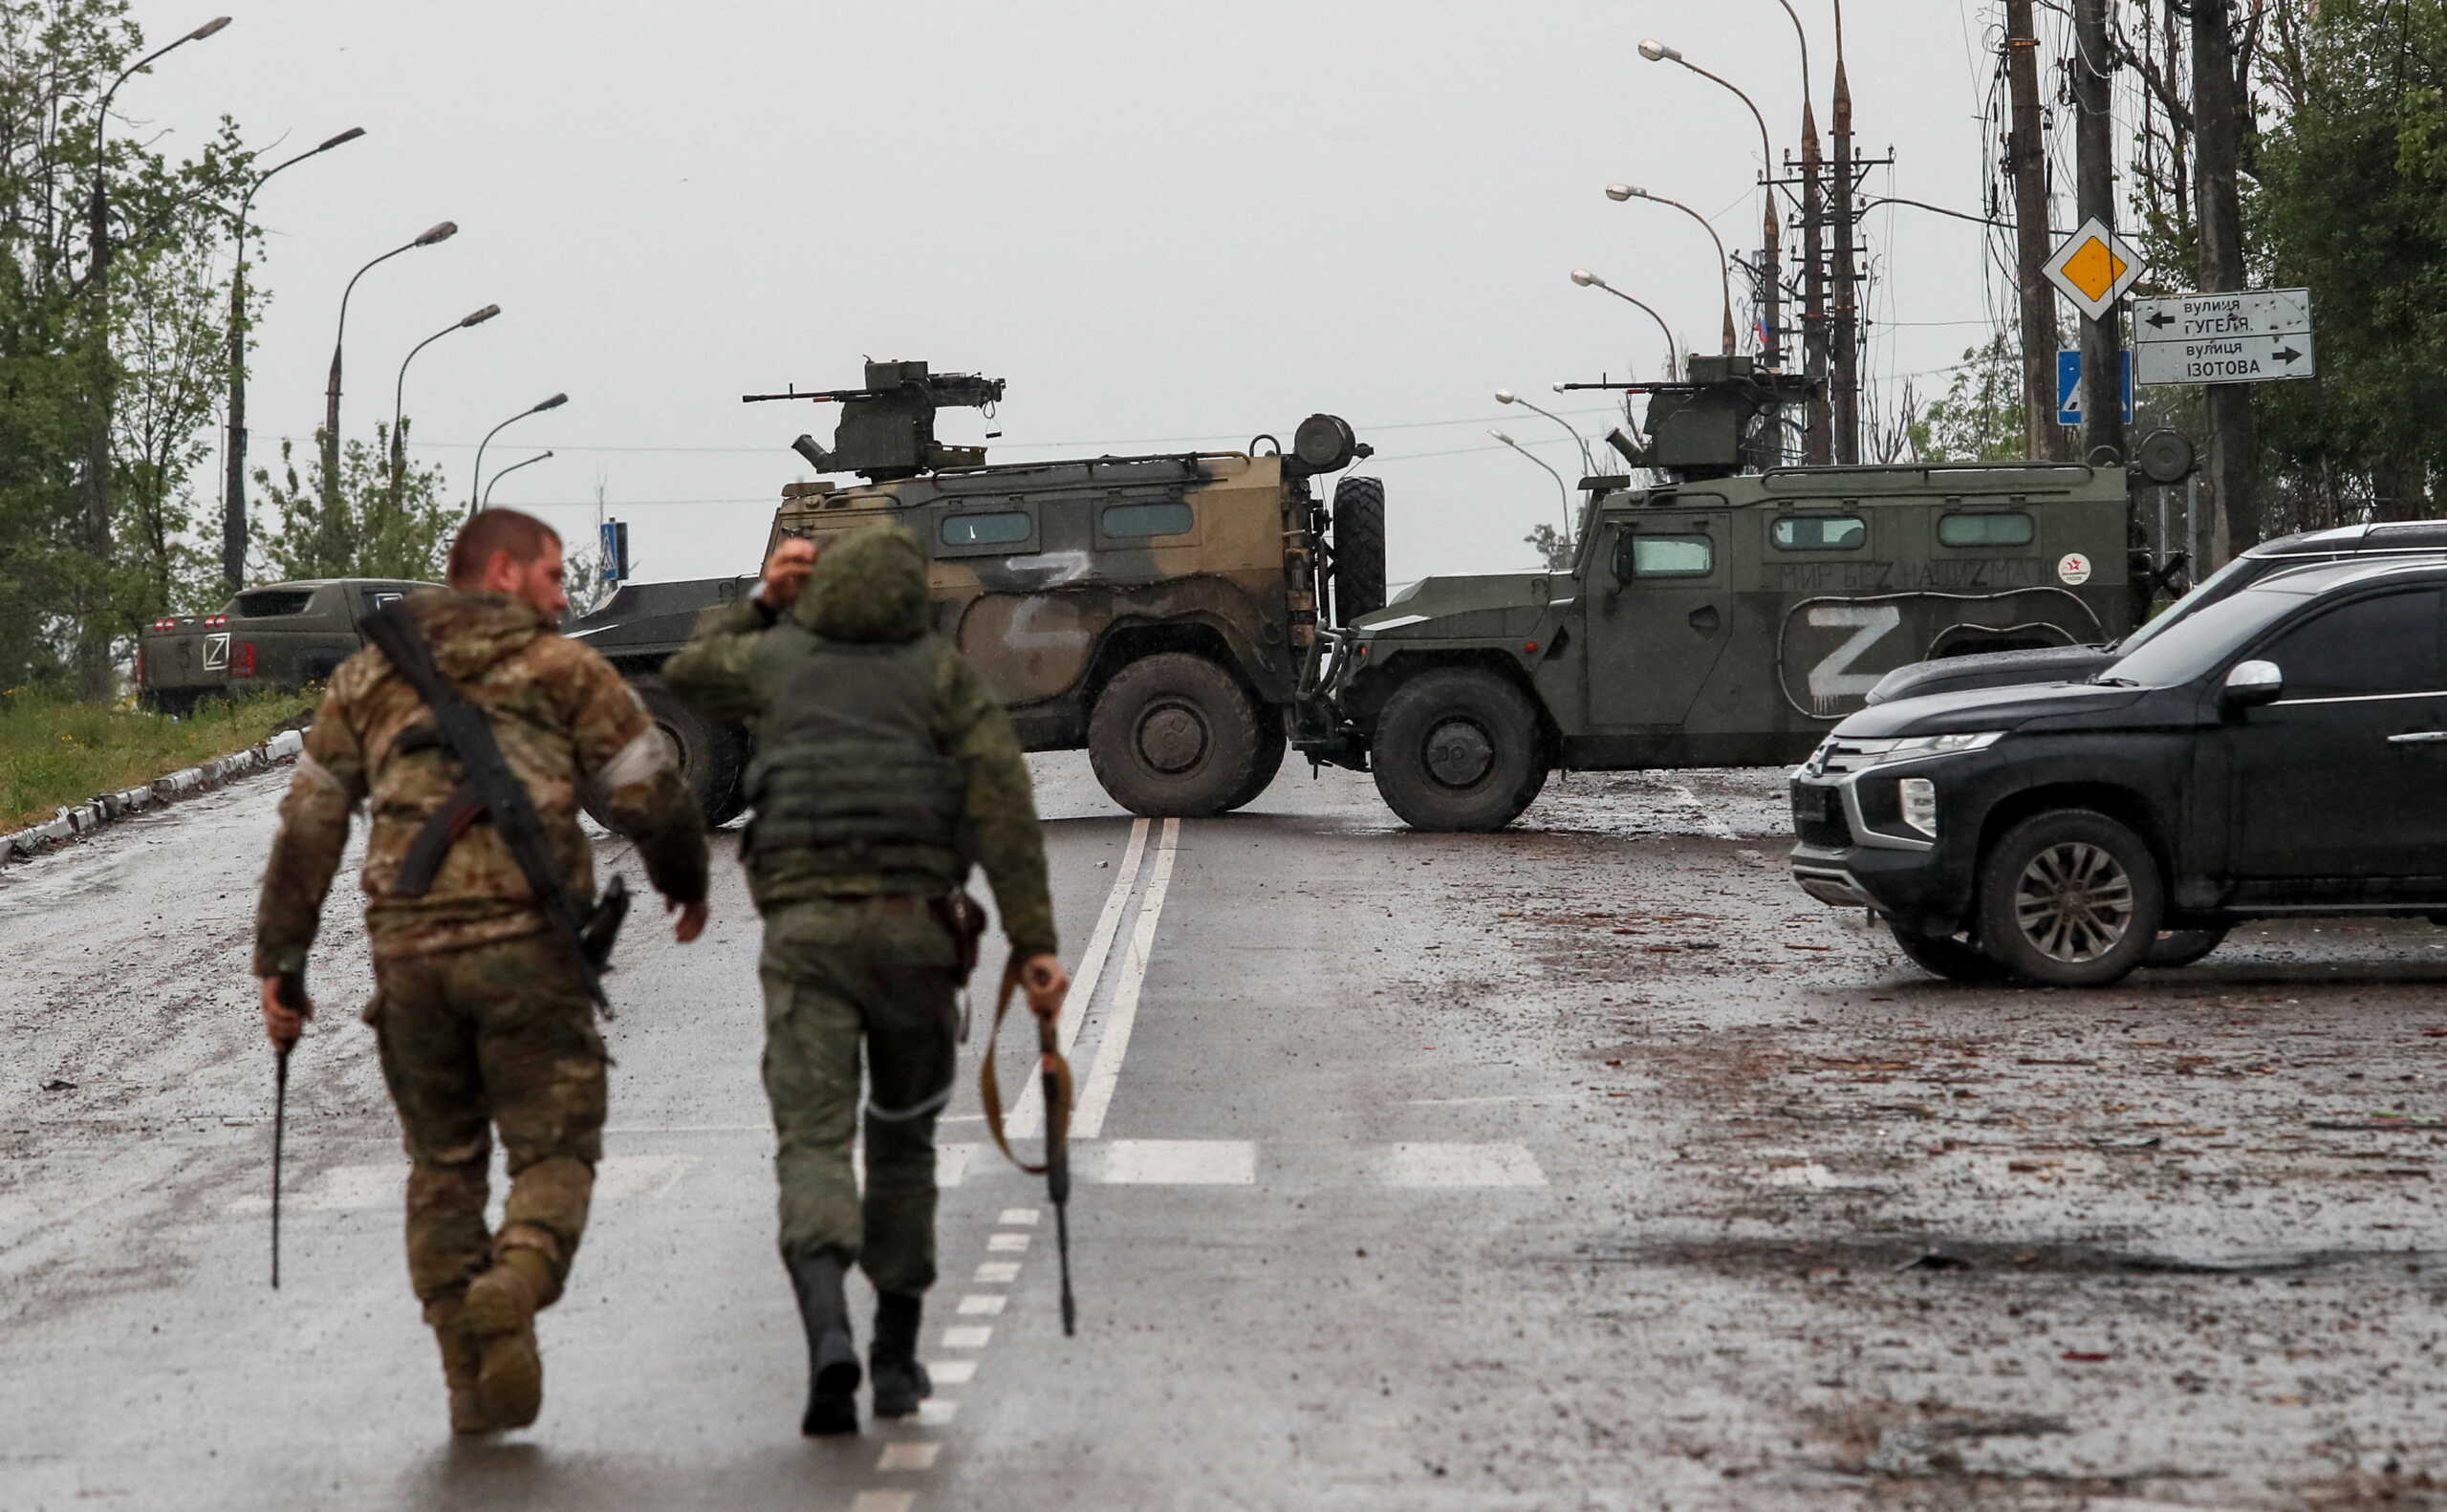 Πόλεμος στην Ουκρανία: «Δεν ξέραμε ότι θα εισβάλλουμε» αποκαλύπτει Ρώσος αξιωματικός